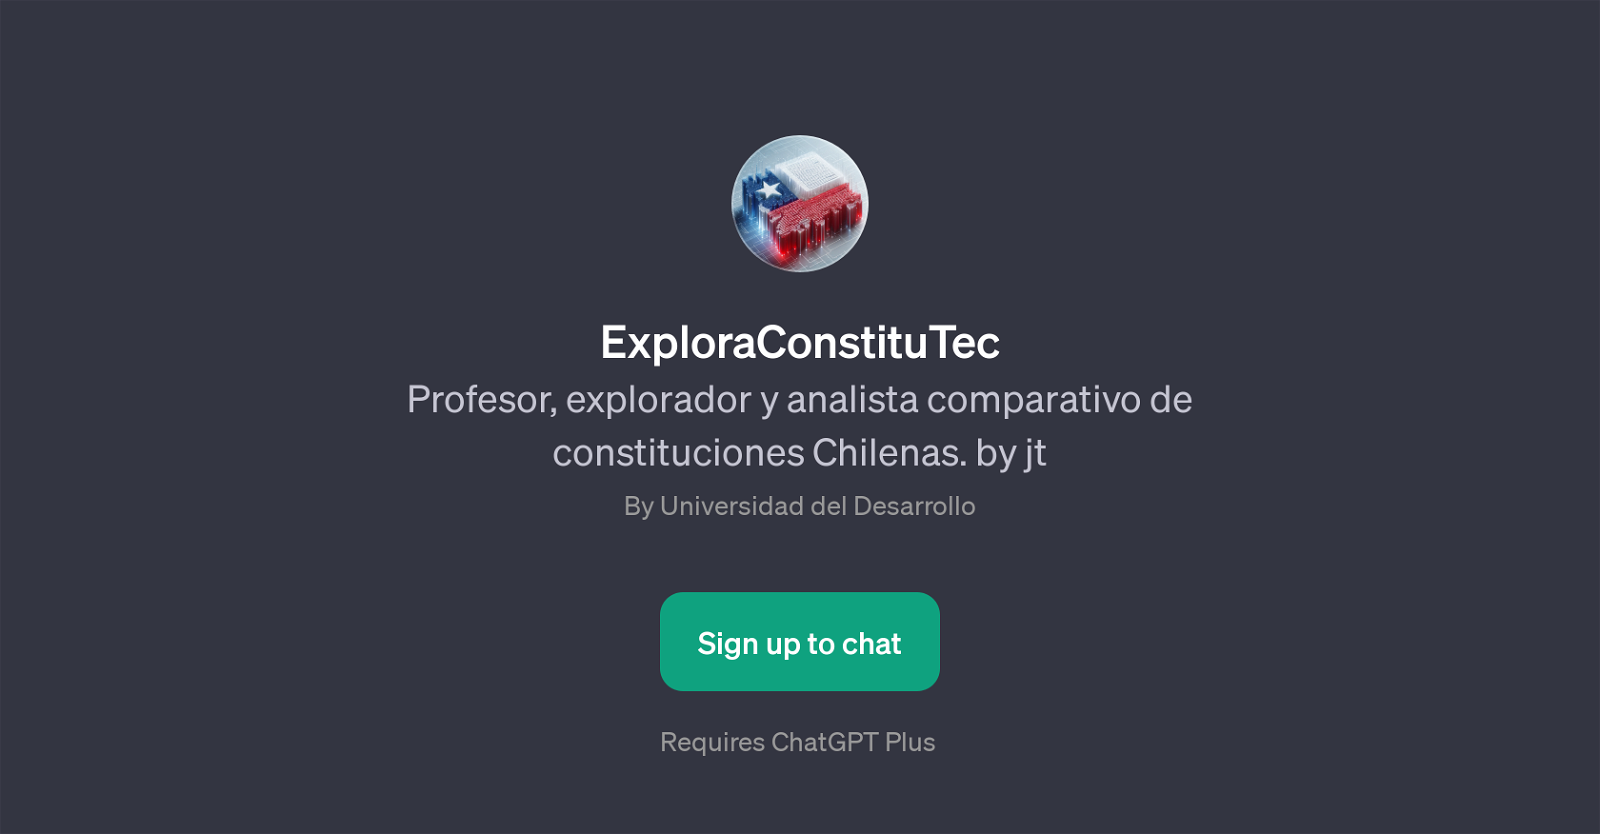 ExploraConstituTec website